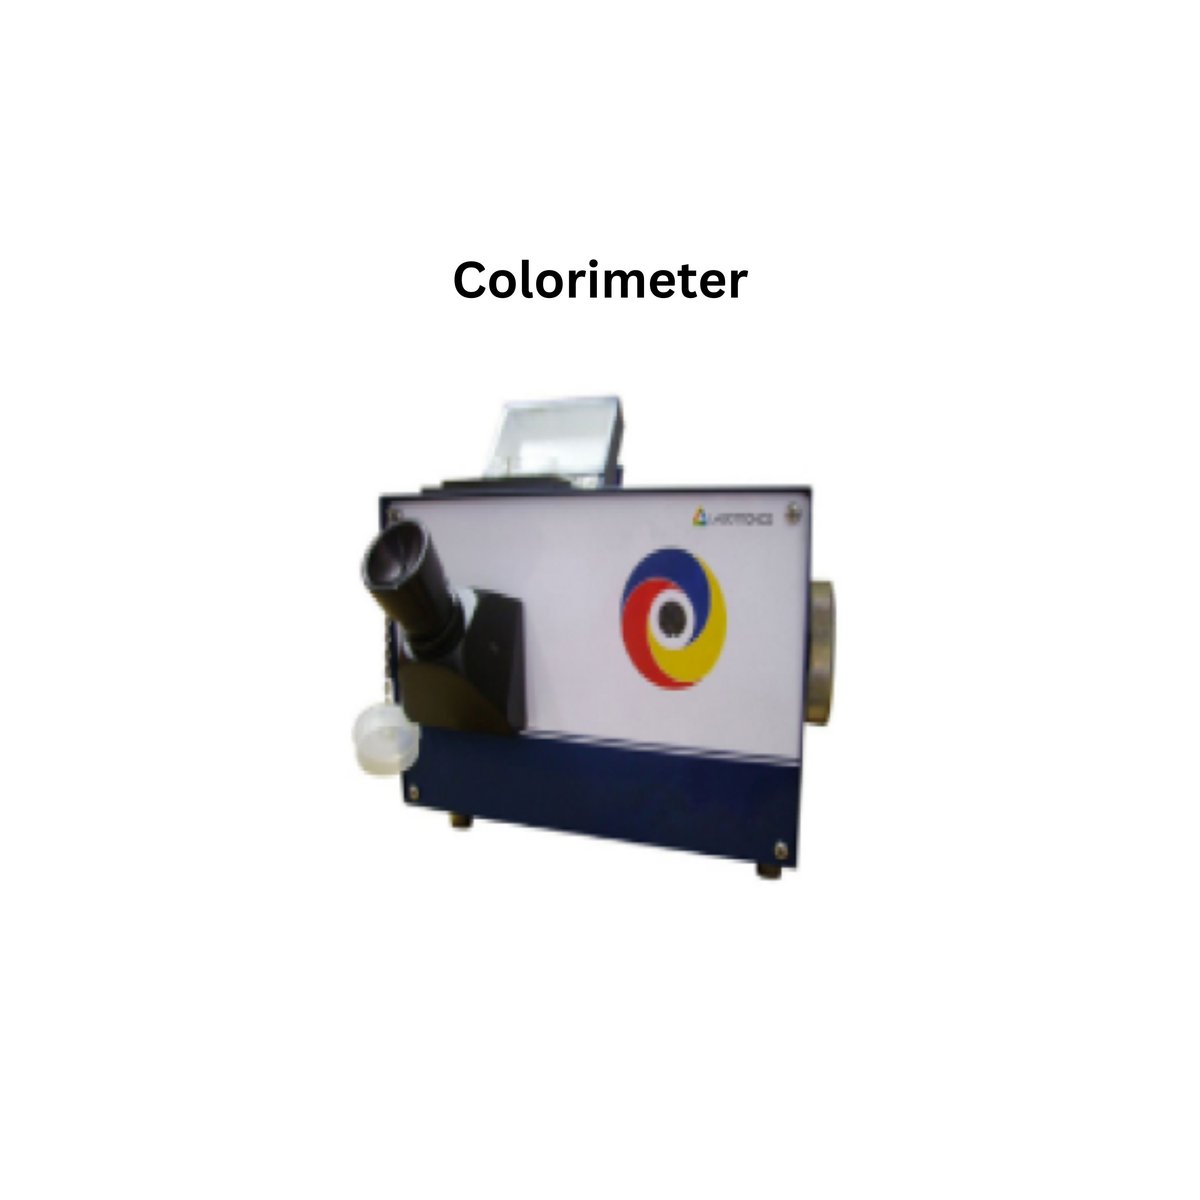 Colorimeter.jpg